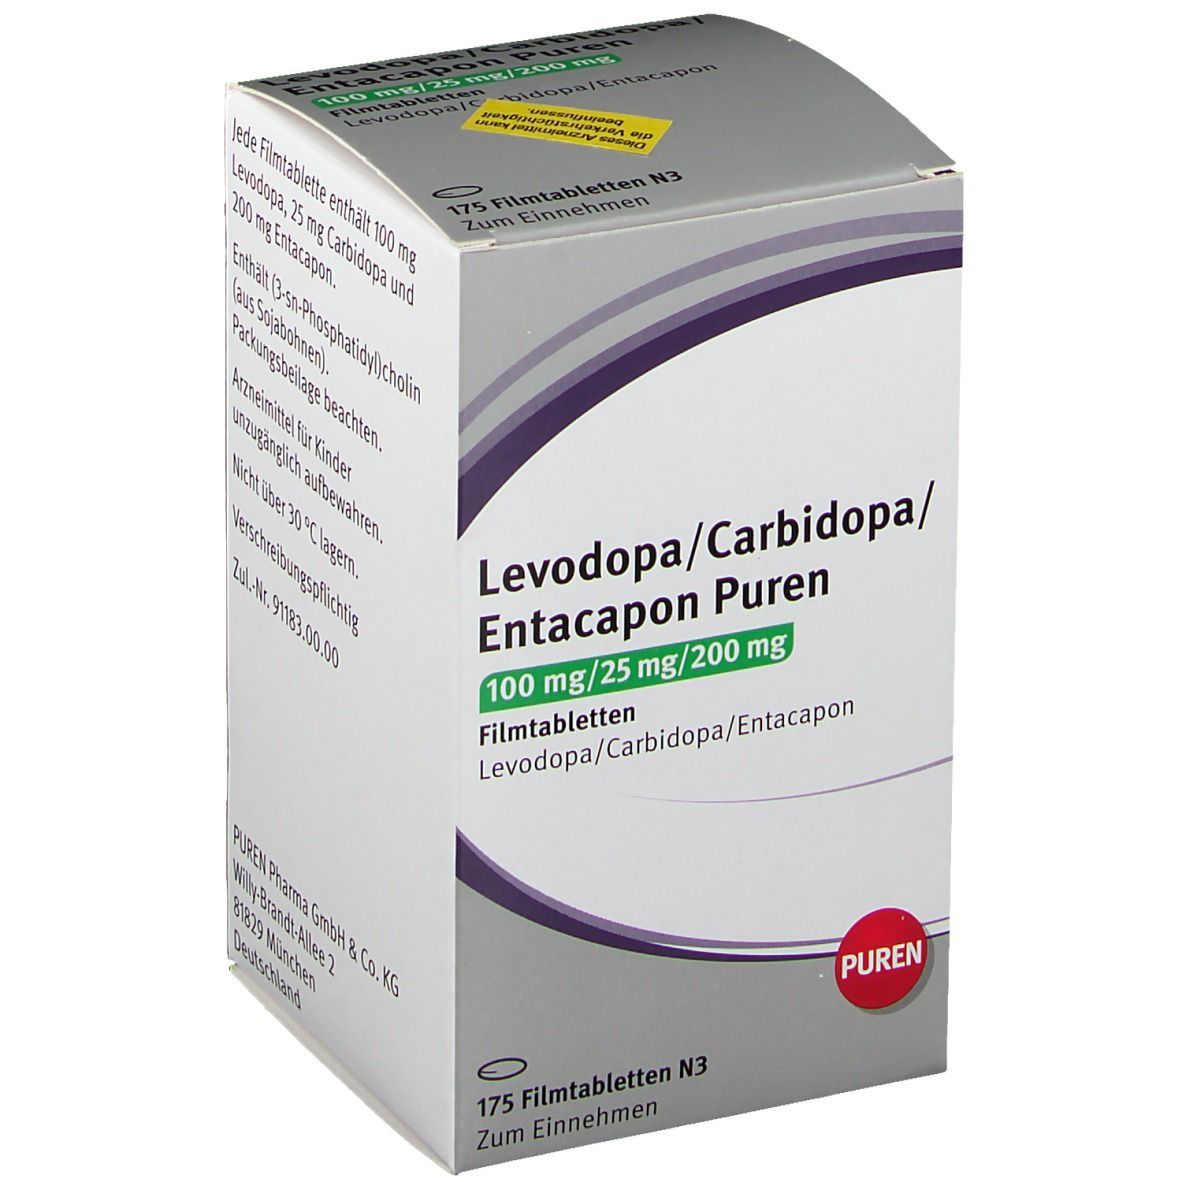 Levodopa/Carbidopa/Entacapon PUREN 100/25/200